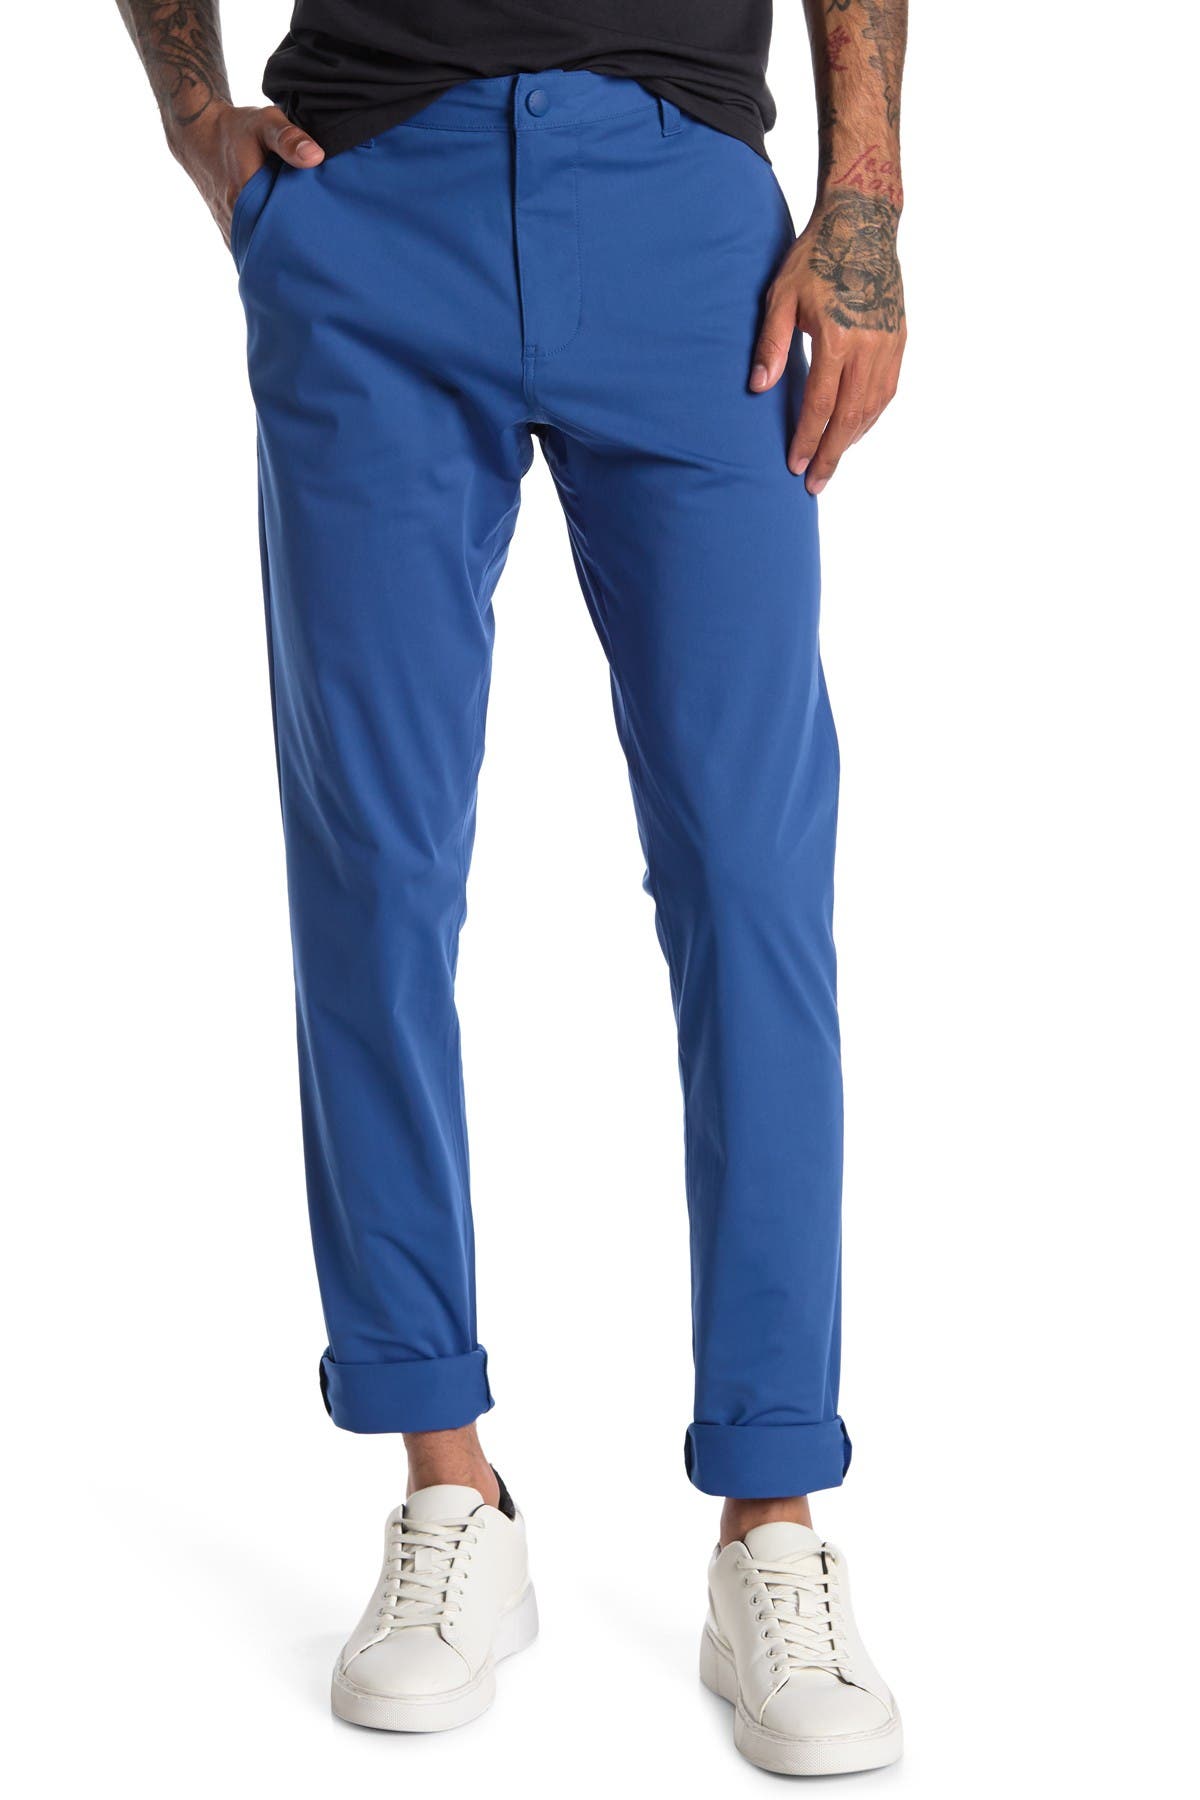 Rhone Commuter Slim Fit Pants In Open Blue13